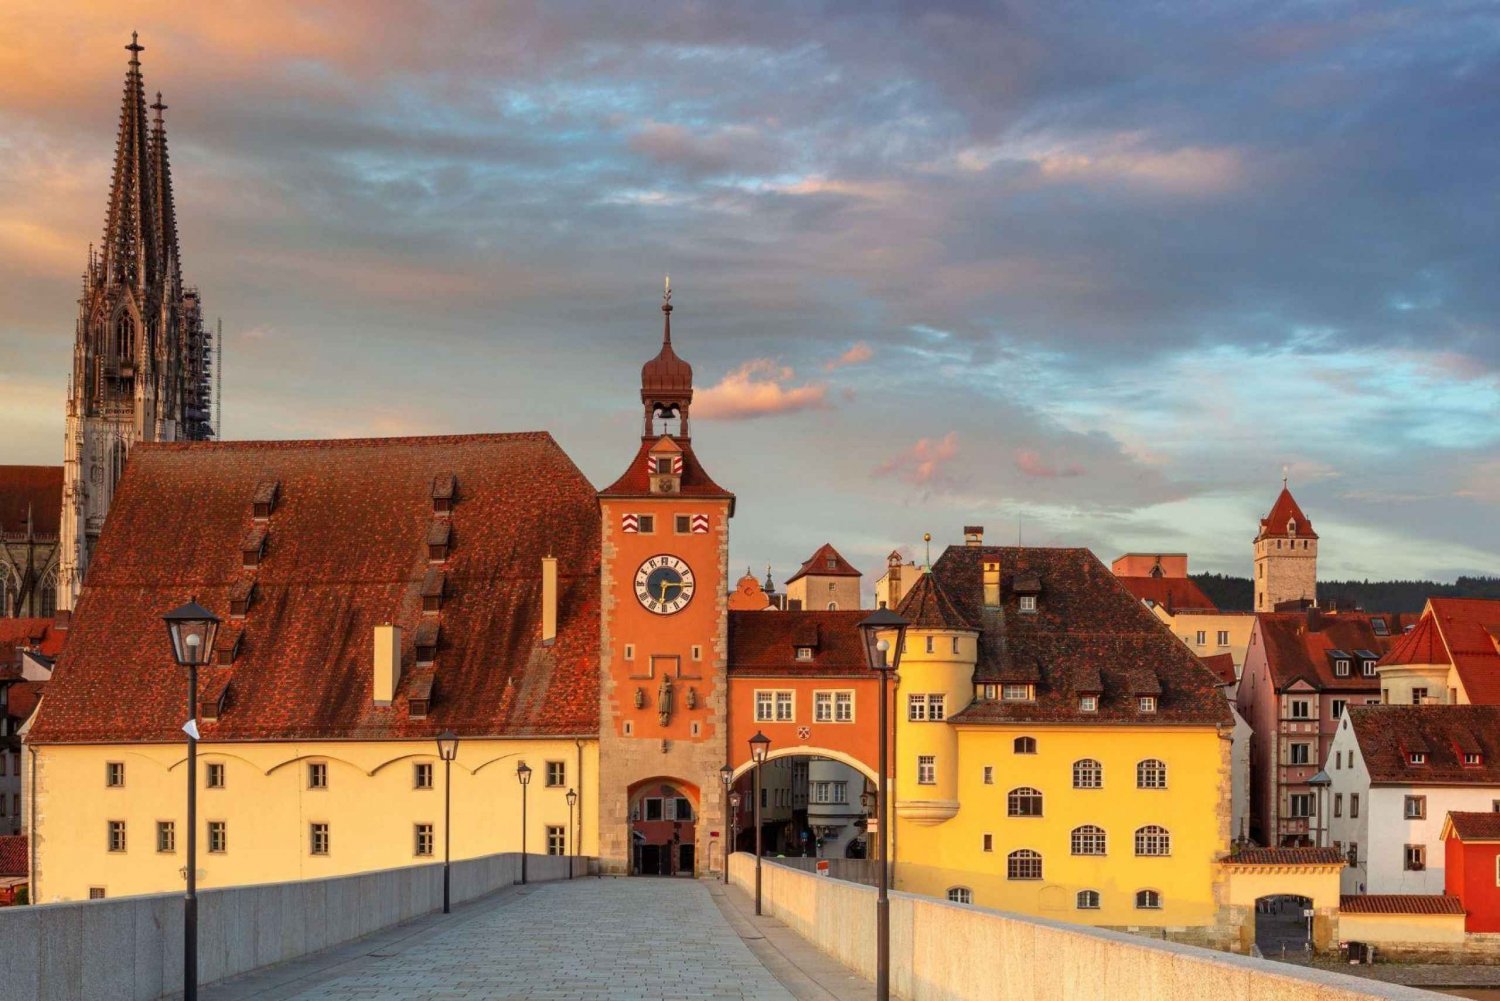 Munich to Regensburg: UNESCO World Heritage Site Regensburg